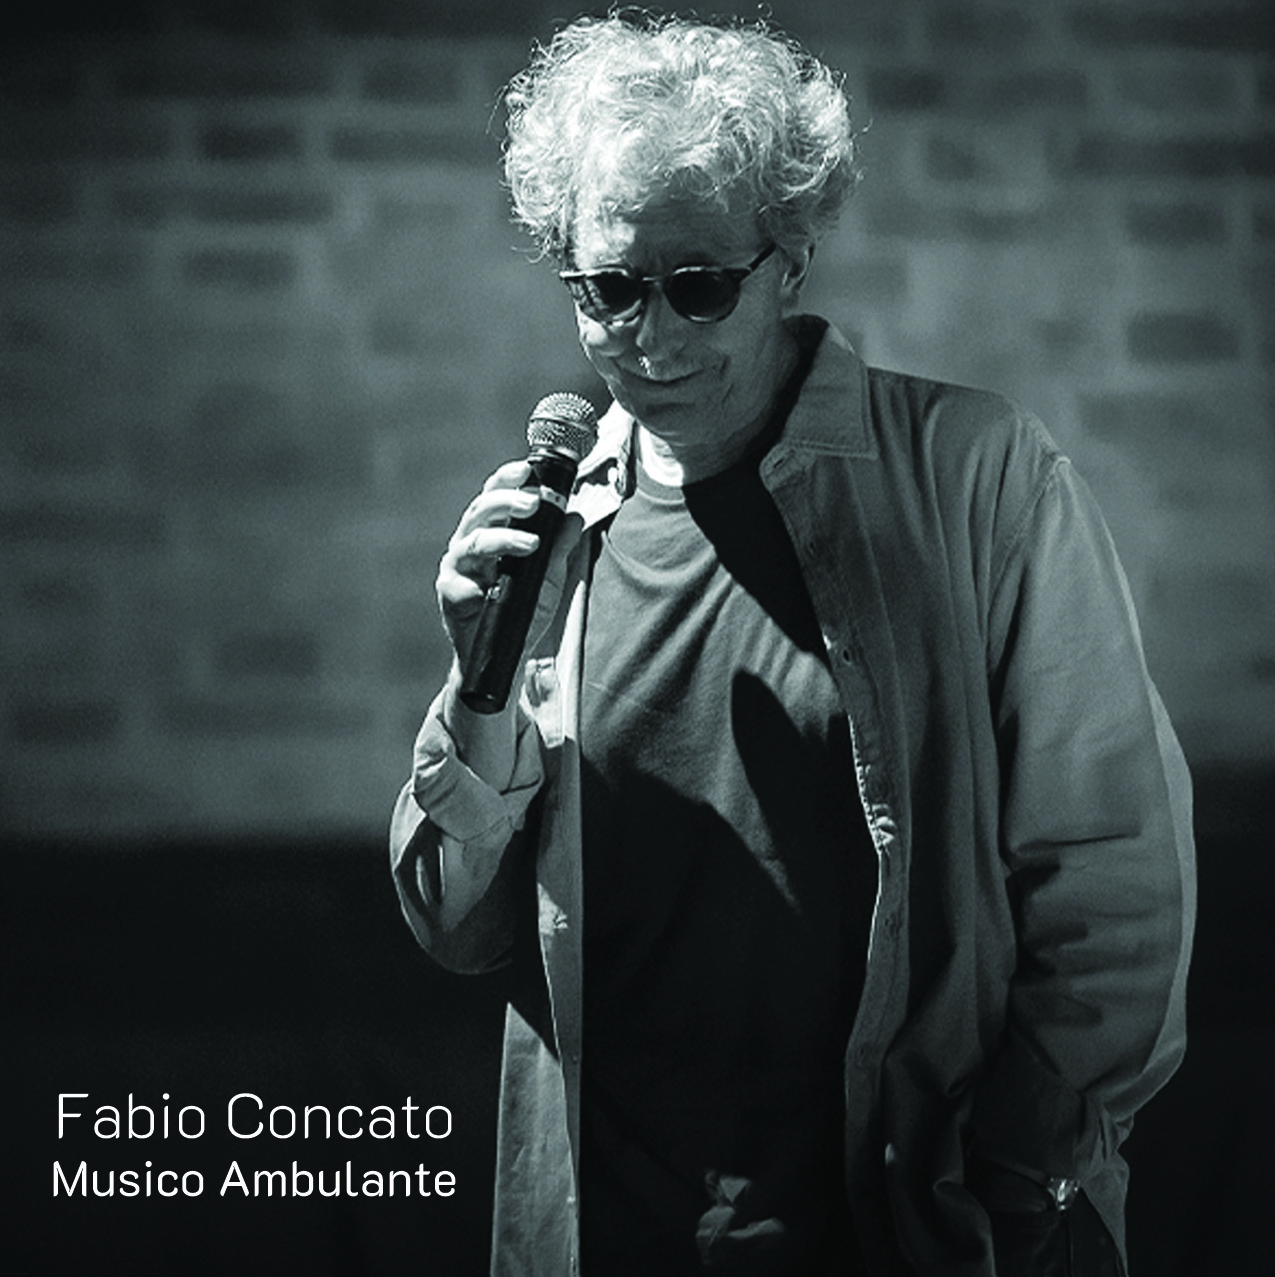 Vinile Fabio Concato - Musico Ambulante (2 Lp) NUOVO SIGILLATO, EDIZIONE DEL 12/02/2021 SUBITO DISPONIBILE